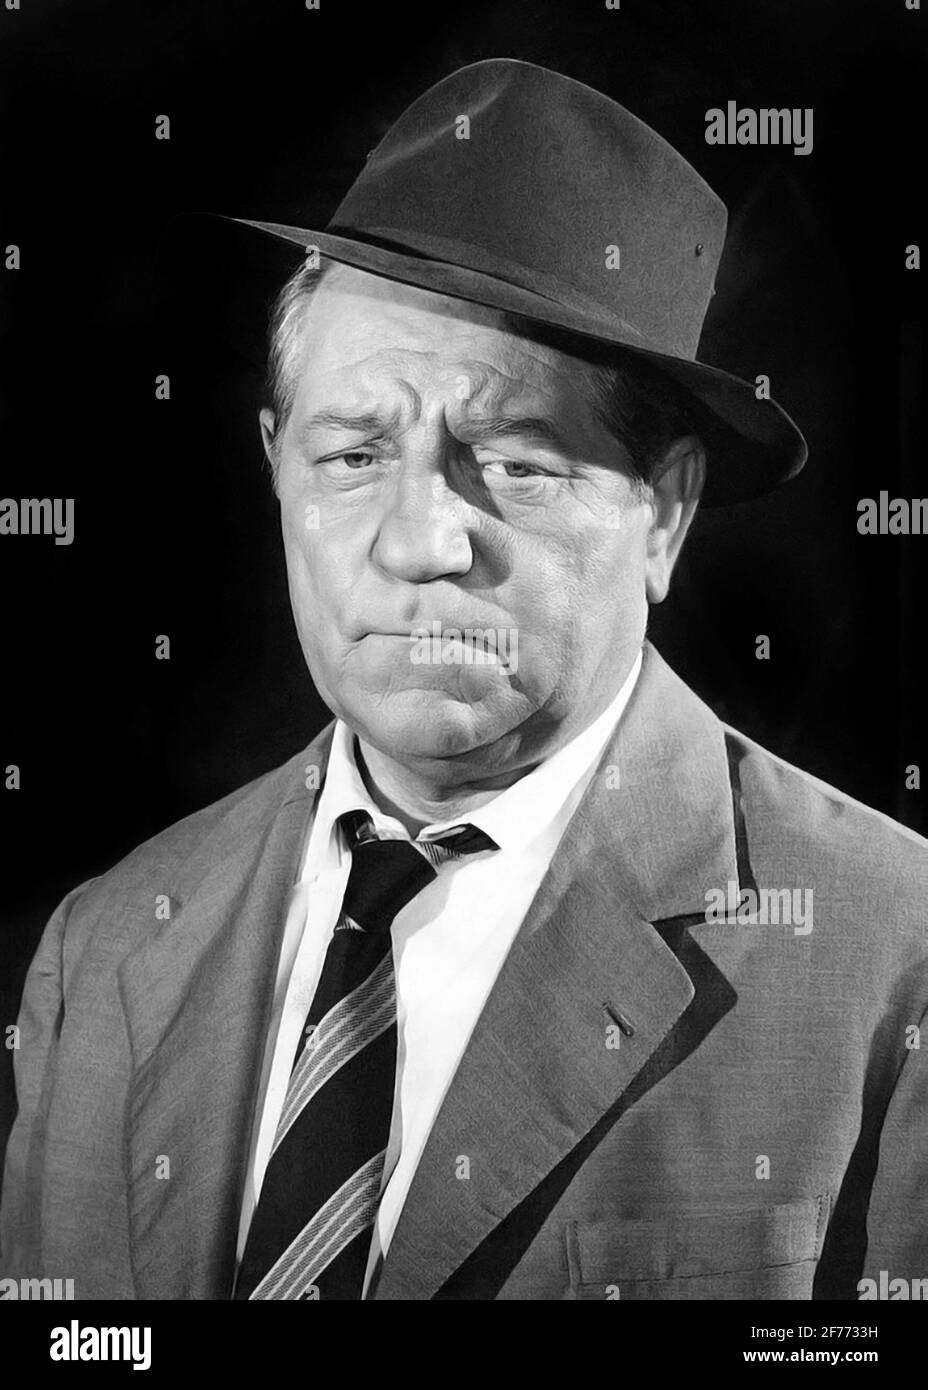 Jean Gabin. Retrato del actor y cantante francés, Jean Gabin (1904-1976), en el papel del Inspector Maigret, 1956 Foto de stock